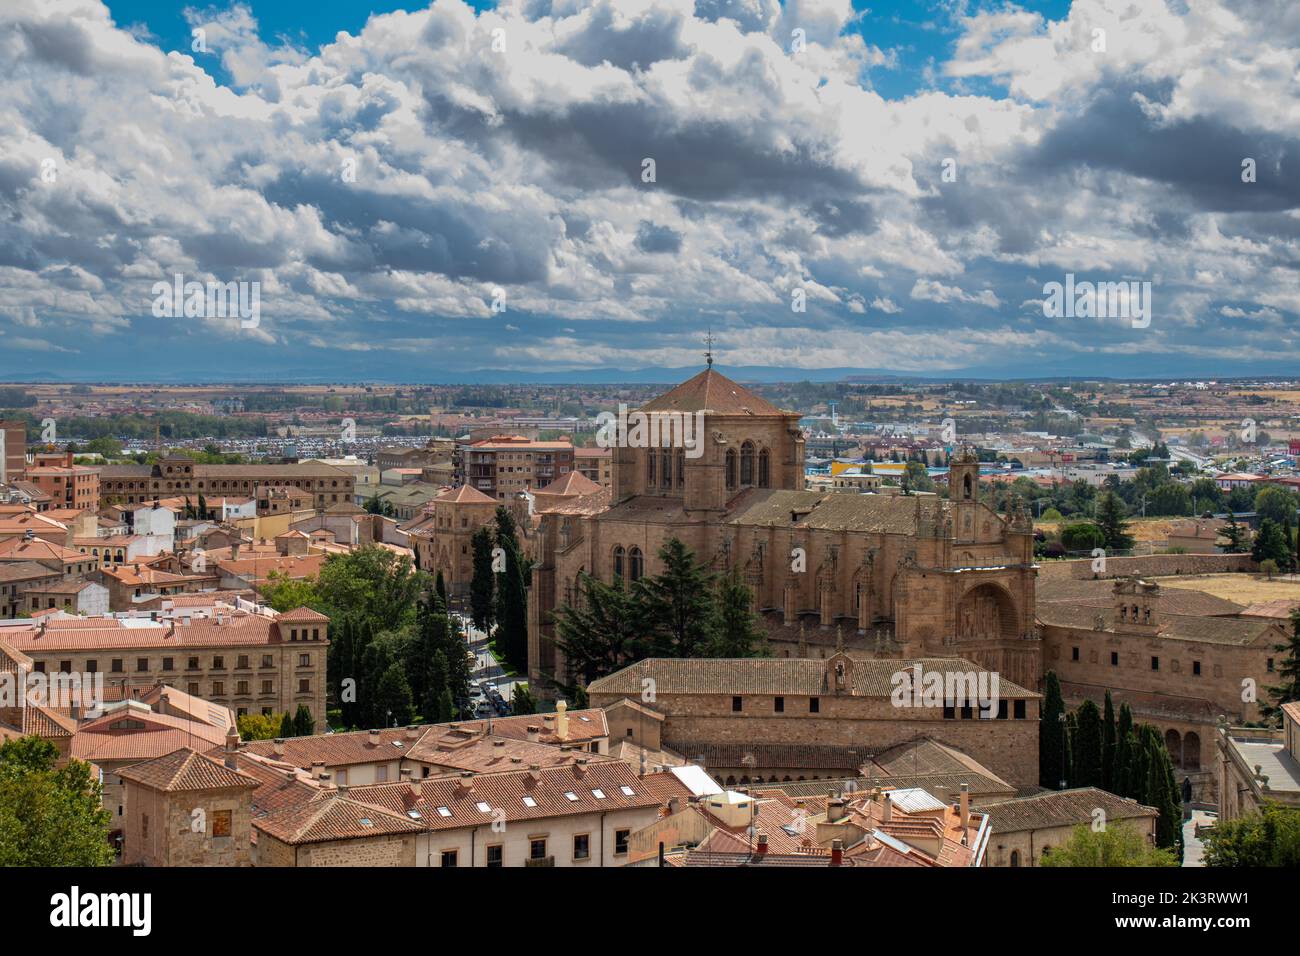 Vista panorámica de la ciudad de Salamanca con la hermosa iglesia de San Esteban, desde lo alto de las torres de la Clerecía. Stock Photo